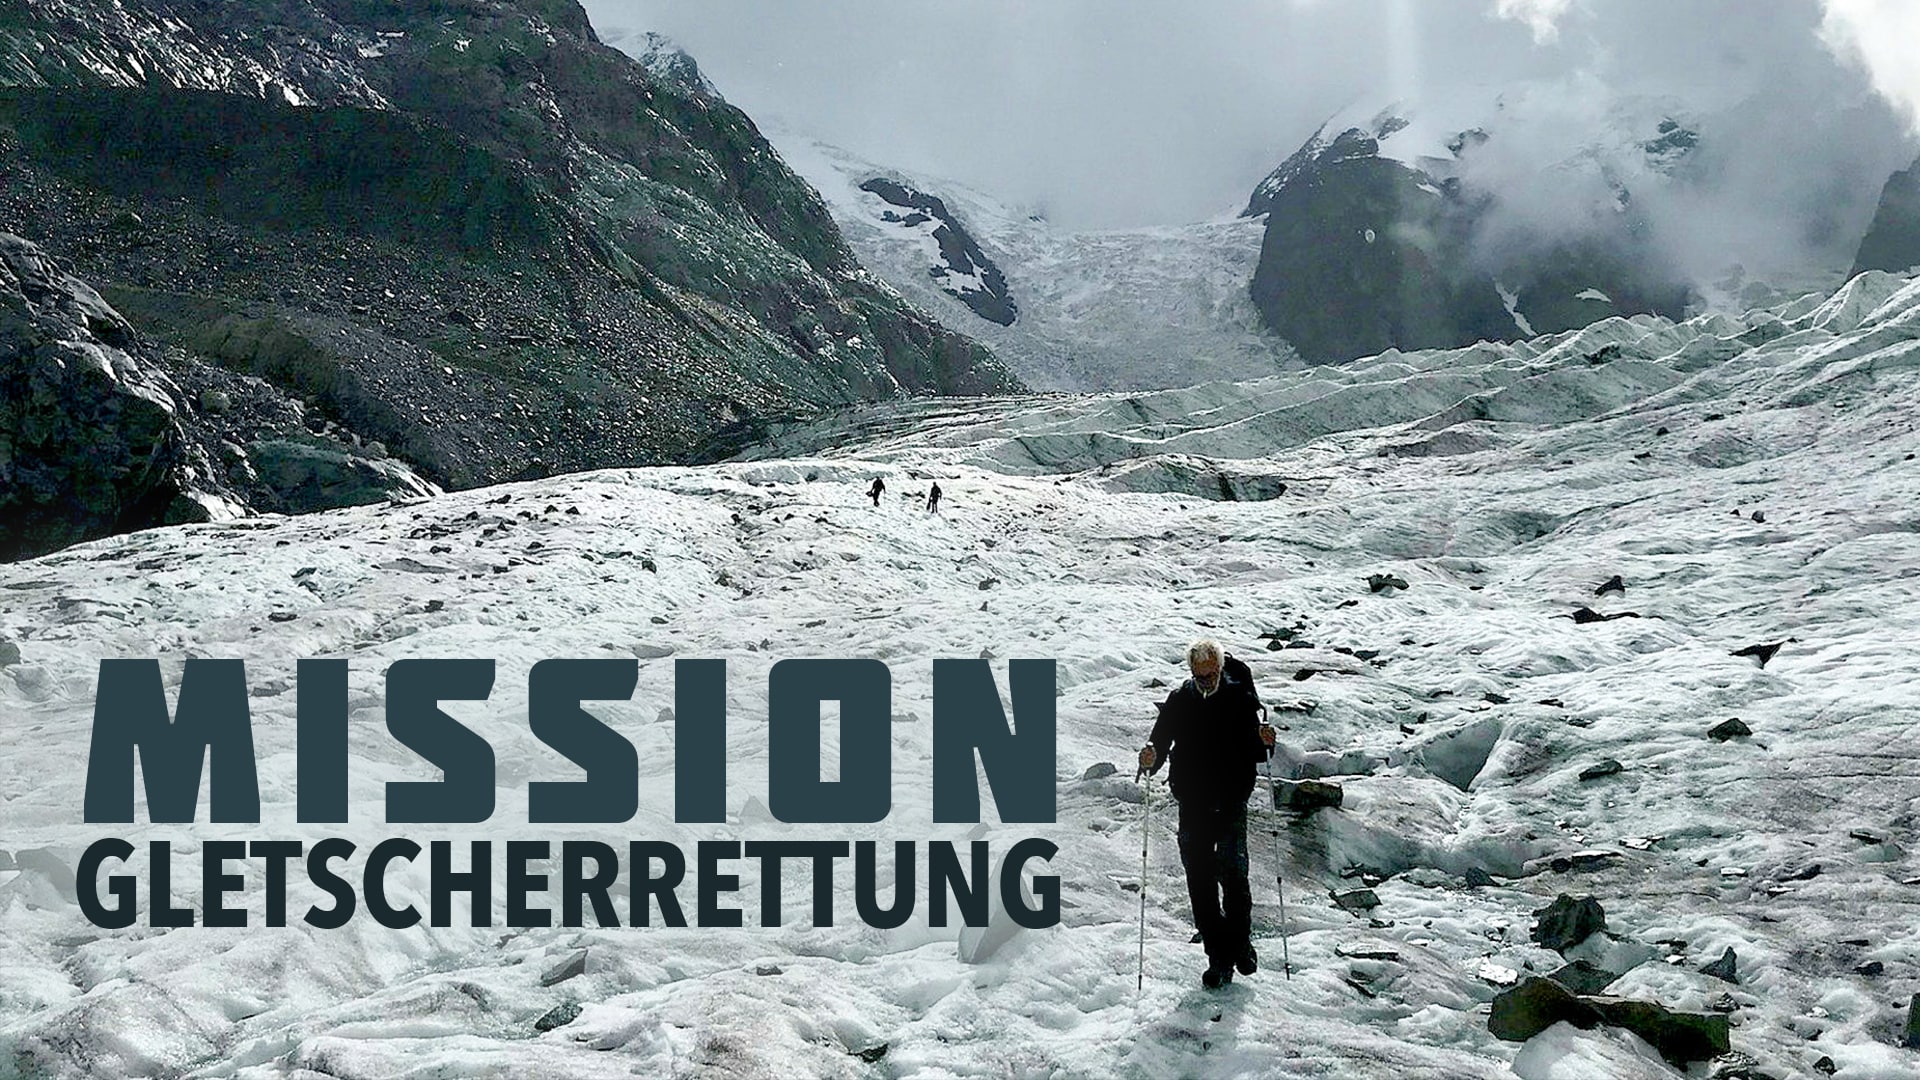 Mission Gletscherrettung